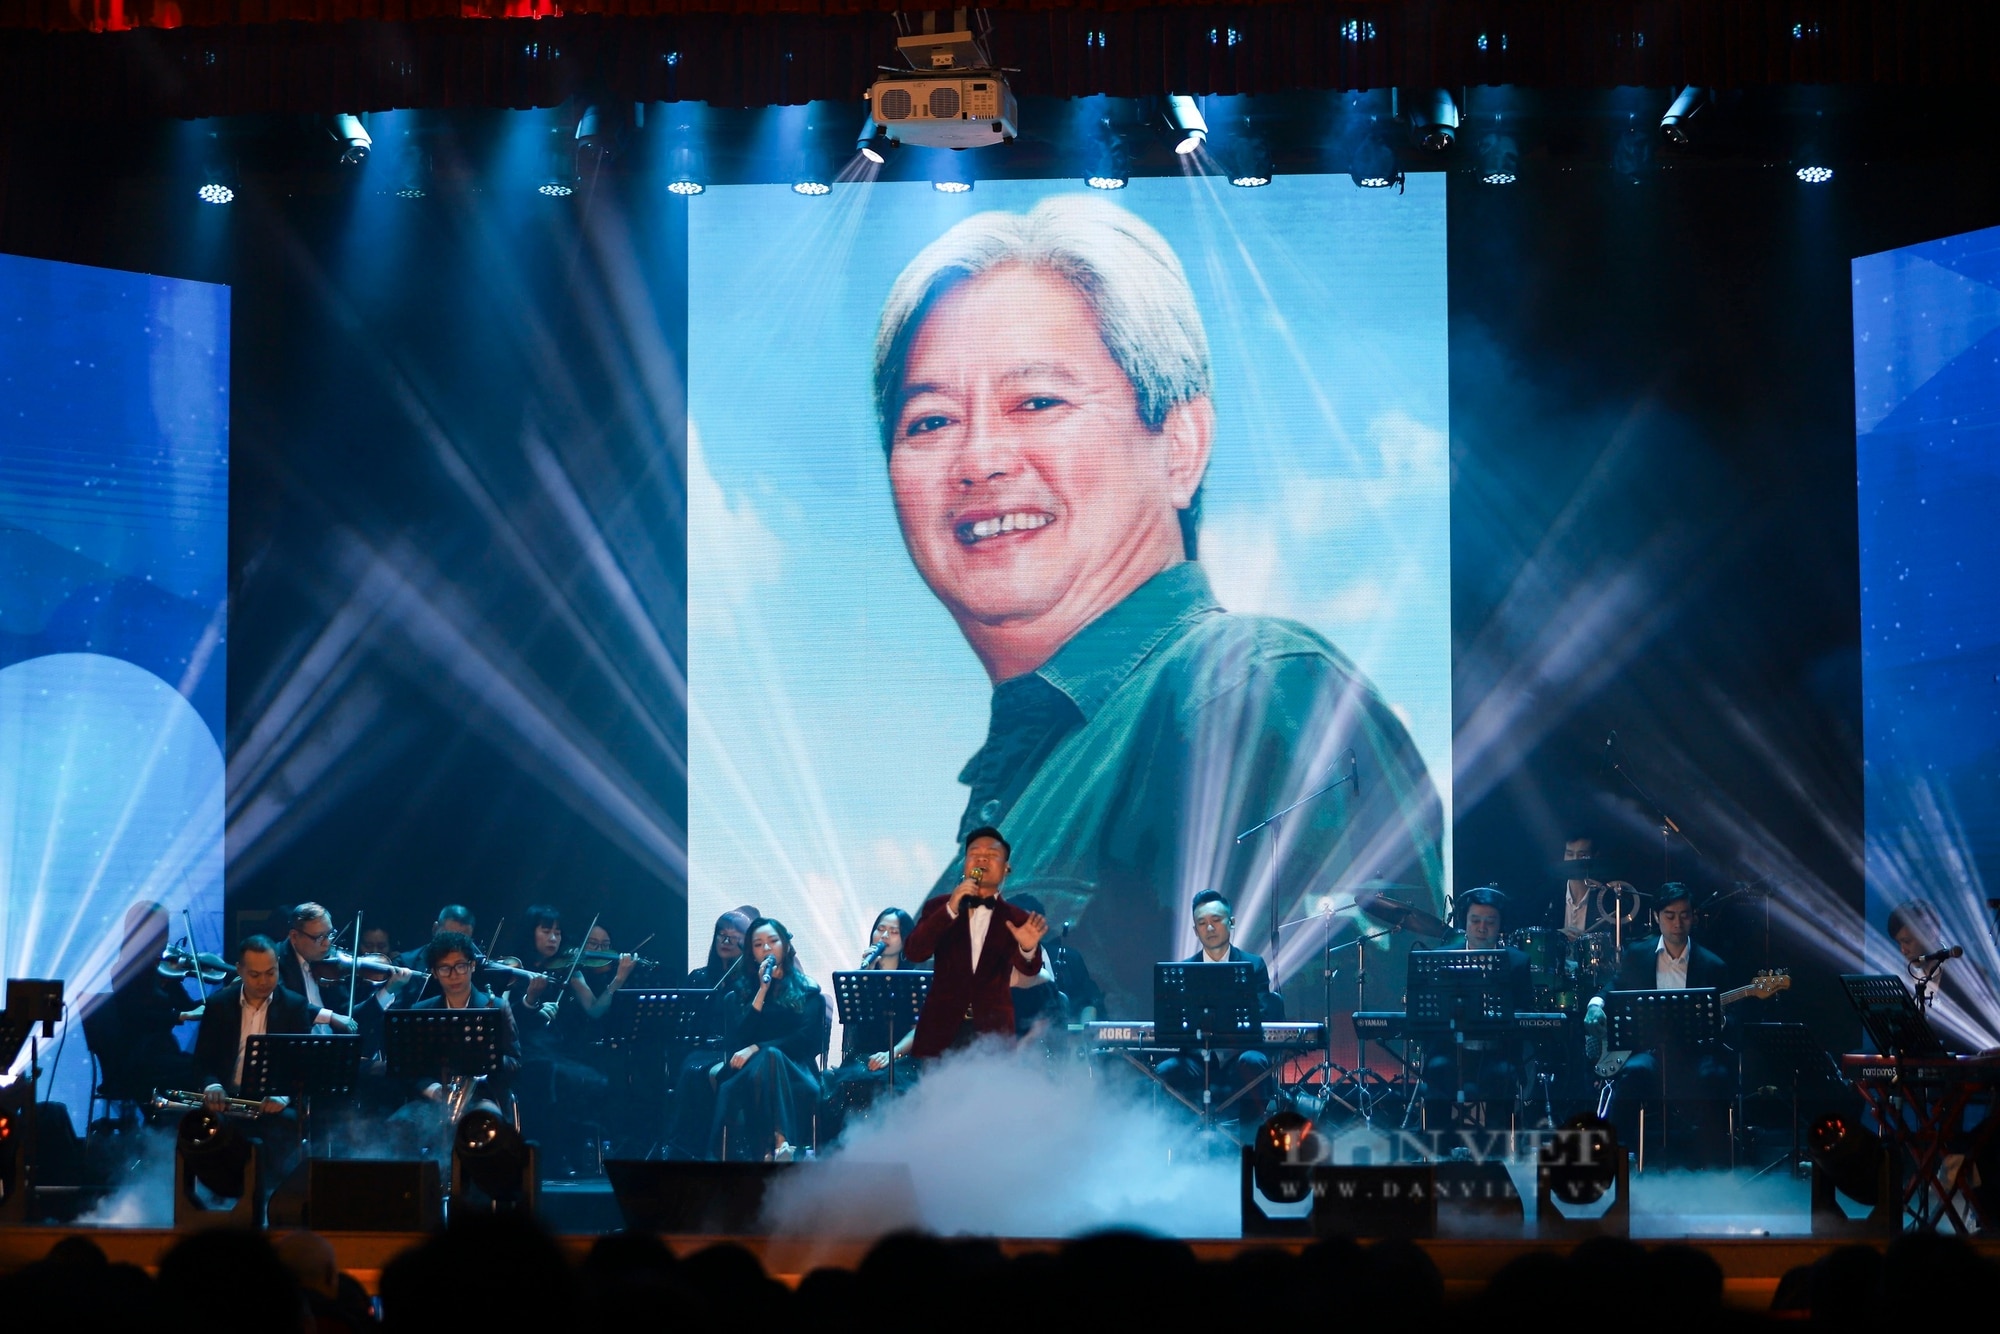 Diva Mỹ Linh hát ca khúc đặc biệt trong đêm nhạc tưởng nhớ PGS Tôn Thất Bách- Ảnh 1.